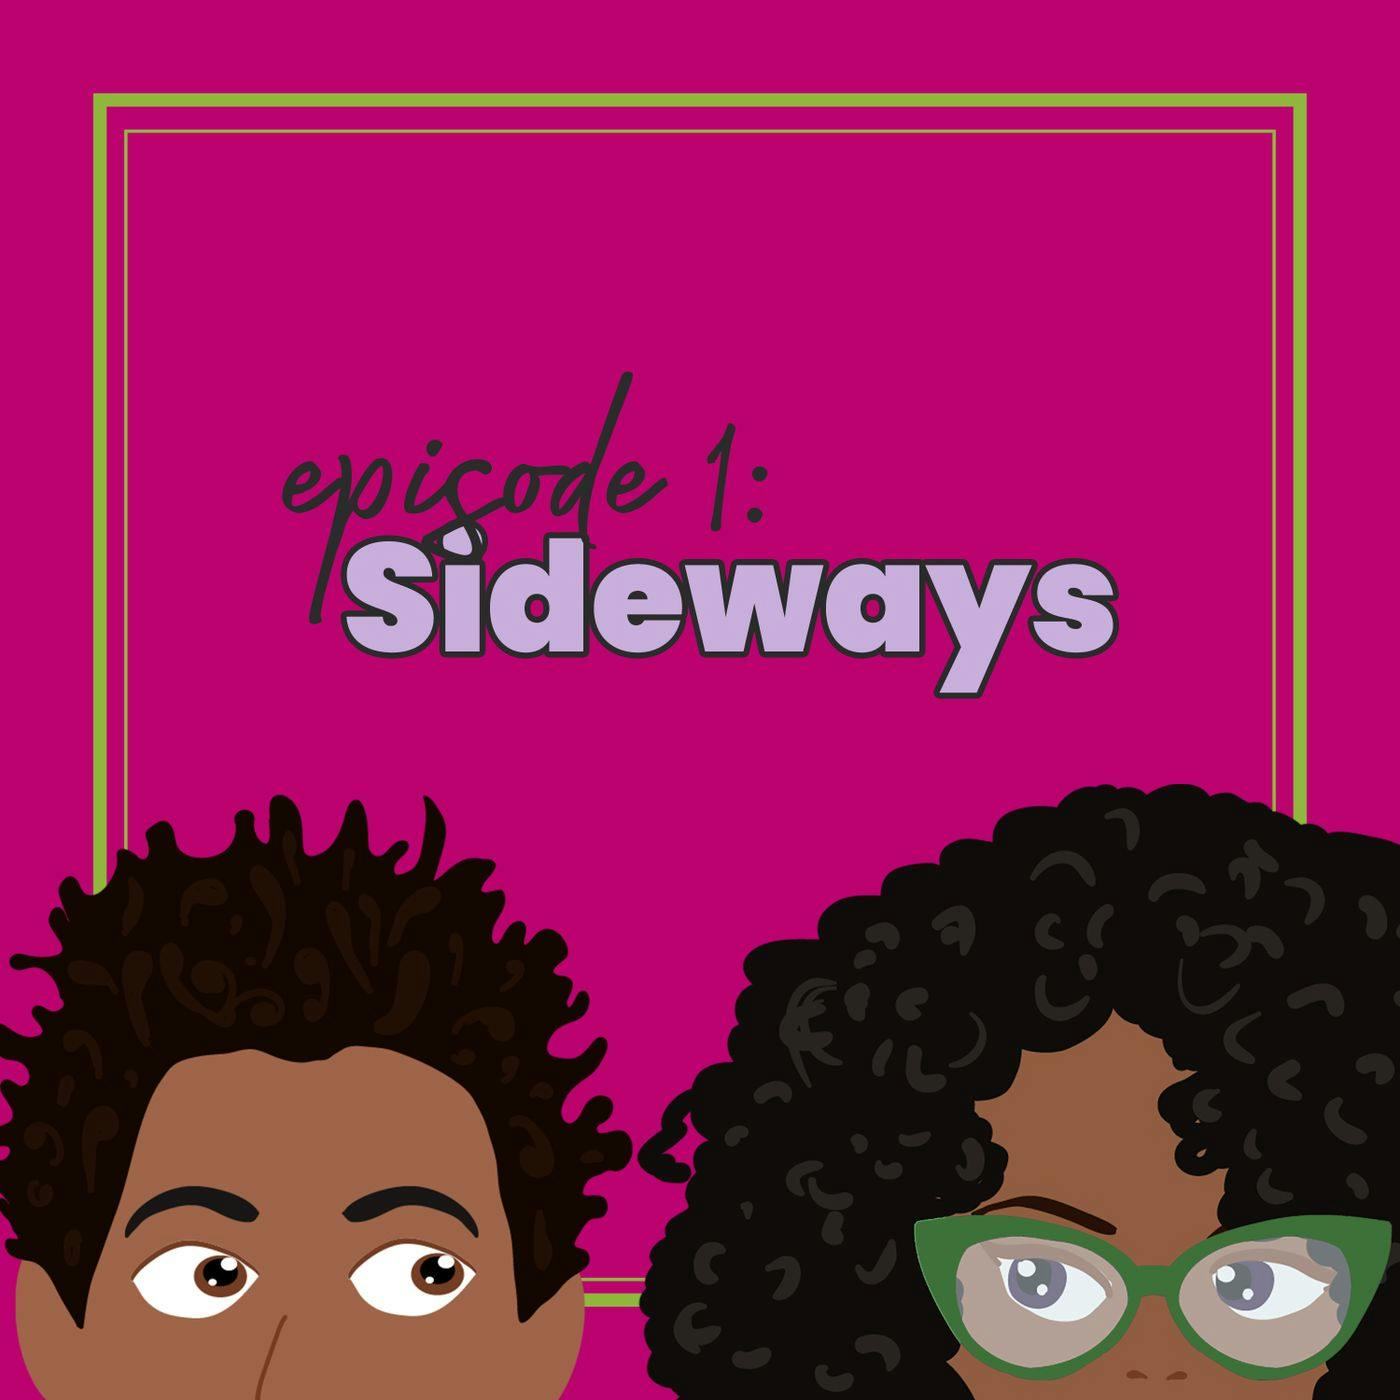 Episode 1: Sideways